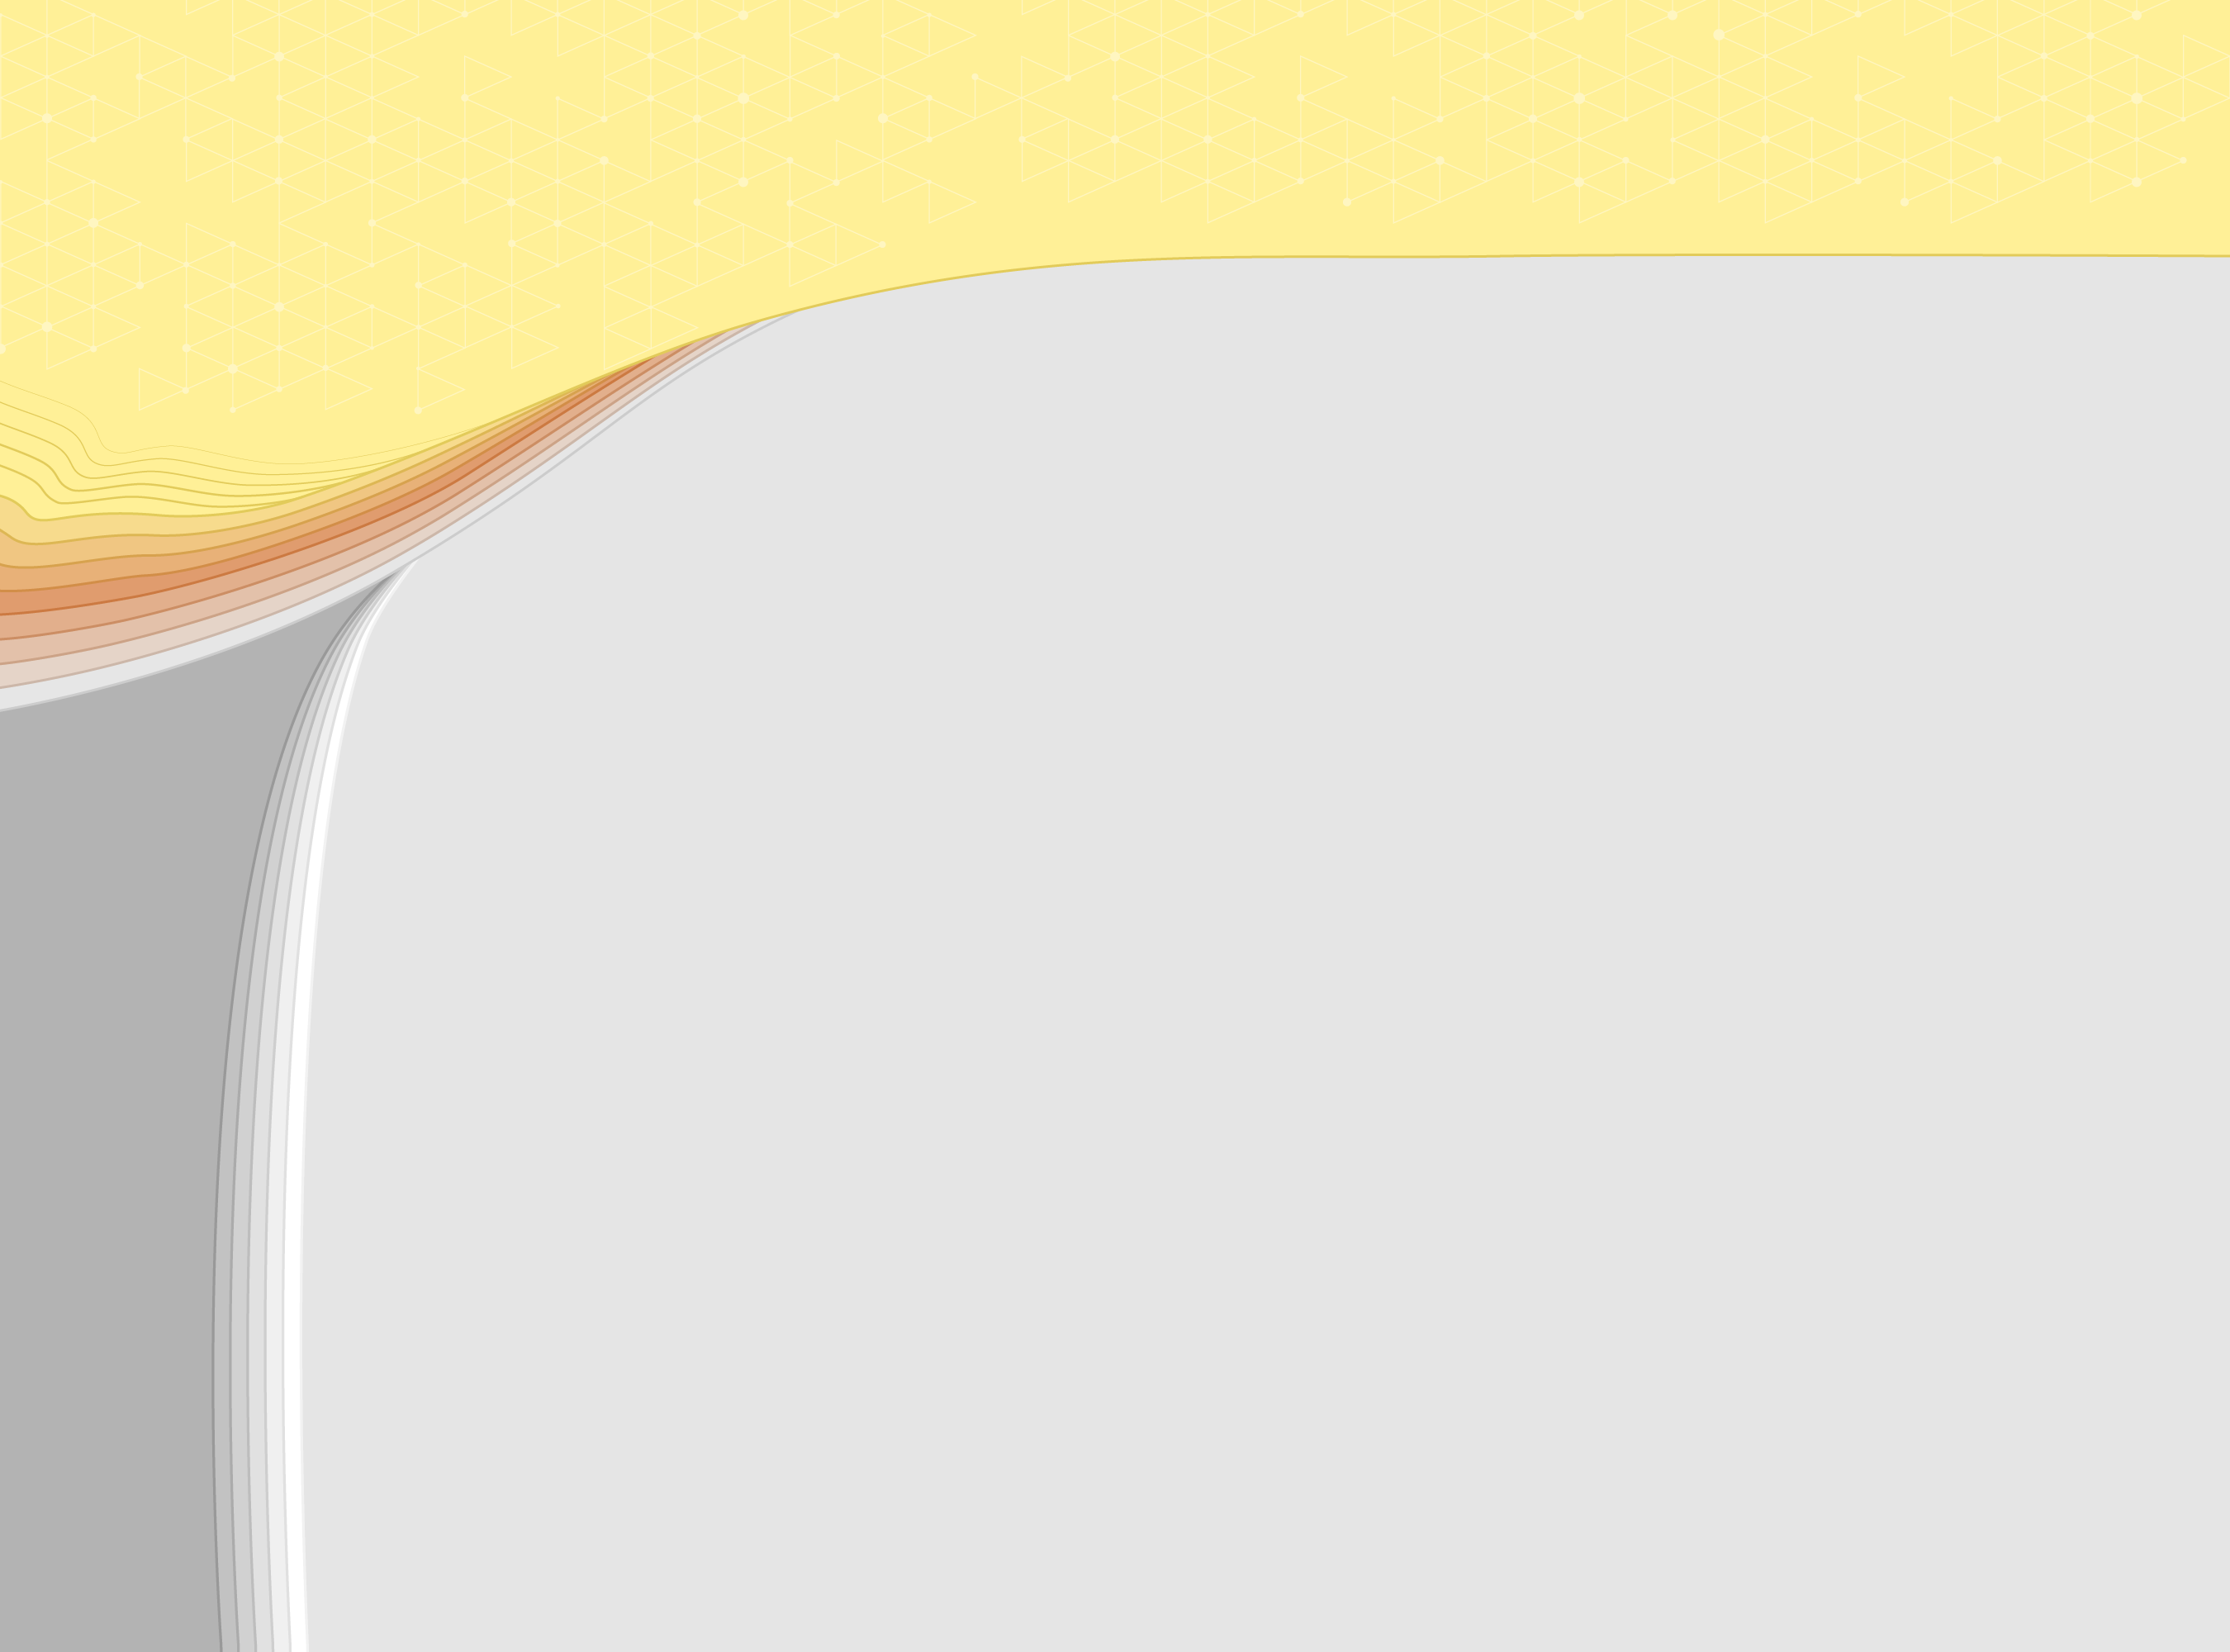 Imagem meramente ilustrativa, de forma retangular, que contém, na parte superior, linhas horizontais curvas em tons de laranjas delimitando um cabeçalho de cor amarela clara. A parte inferior da ilustração é cinza. Fim da descrição.